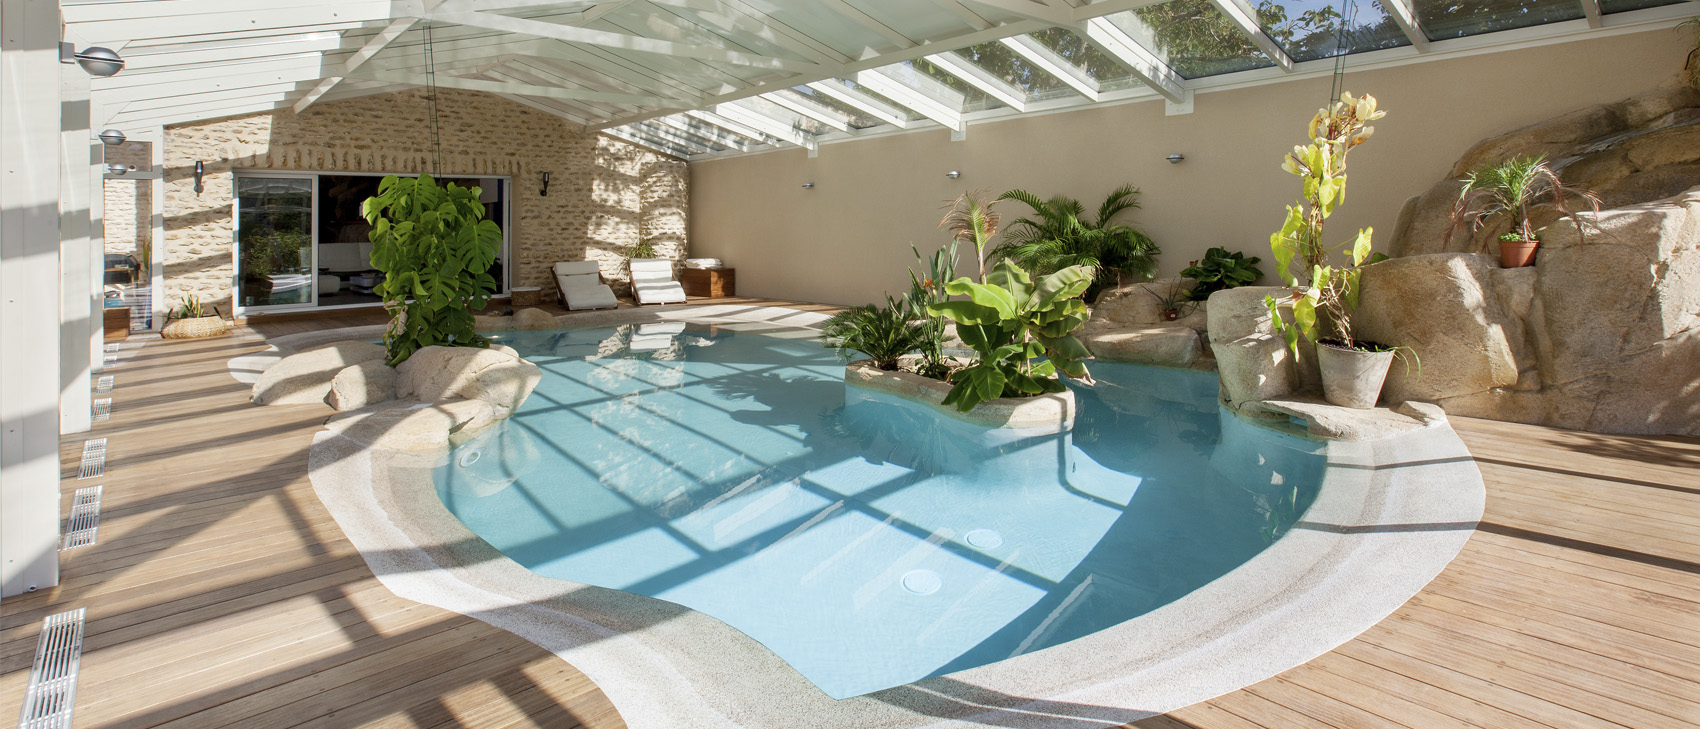 Design harmonieux d'une piscine intérieure sous véranda | Cover Concept France Belgique